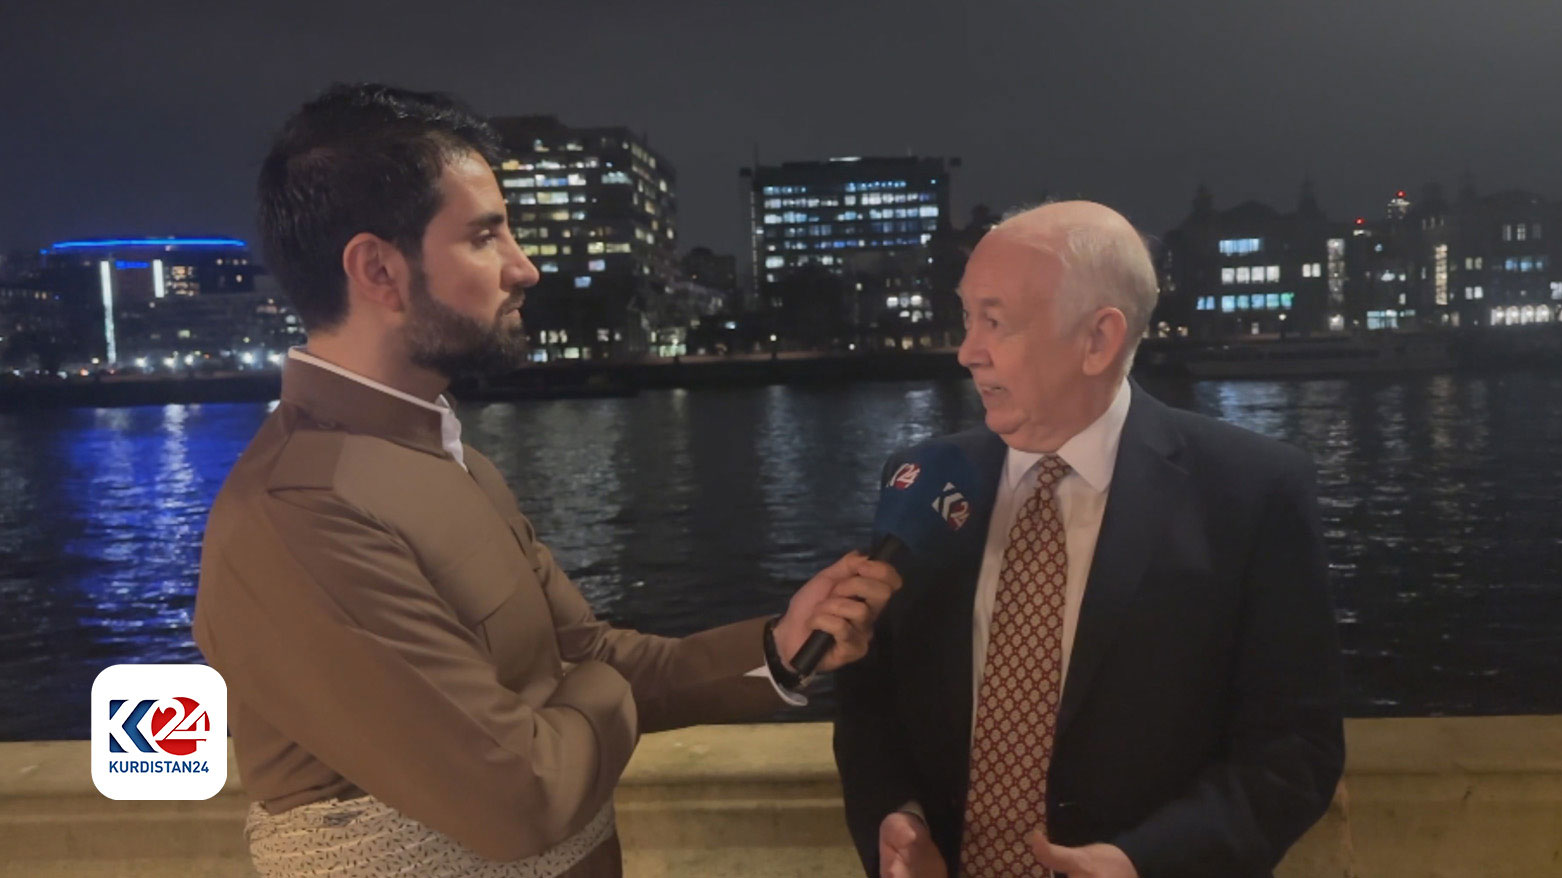 وین دیوید، وزیر امور خاورمیانه در دولت سایه انگلیس در هنگام مصاحبه با گزارشگر کوردستان٢٤ در لندن